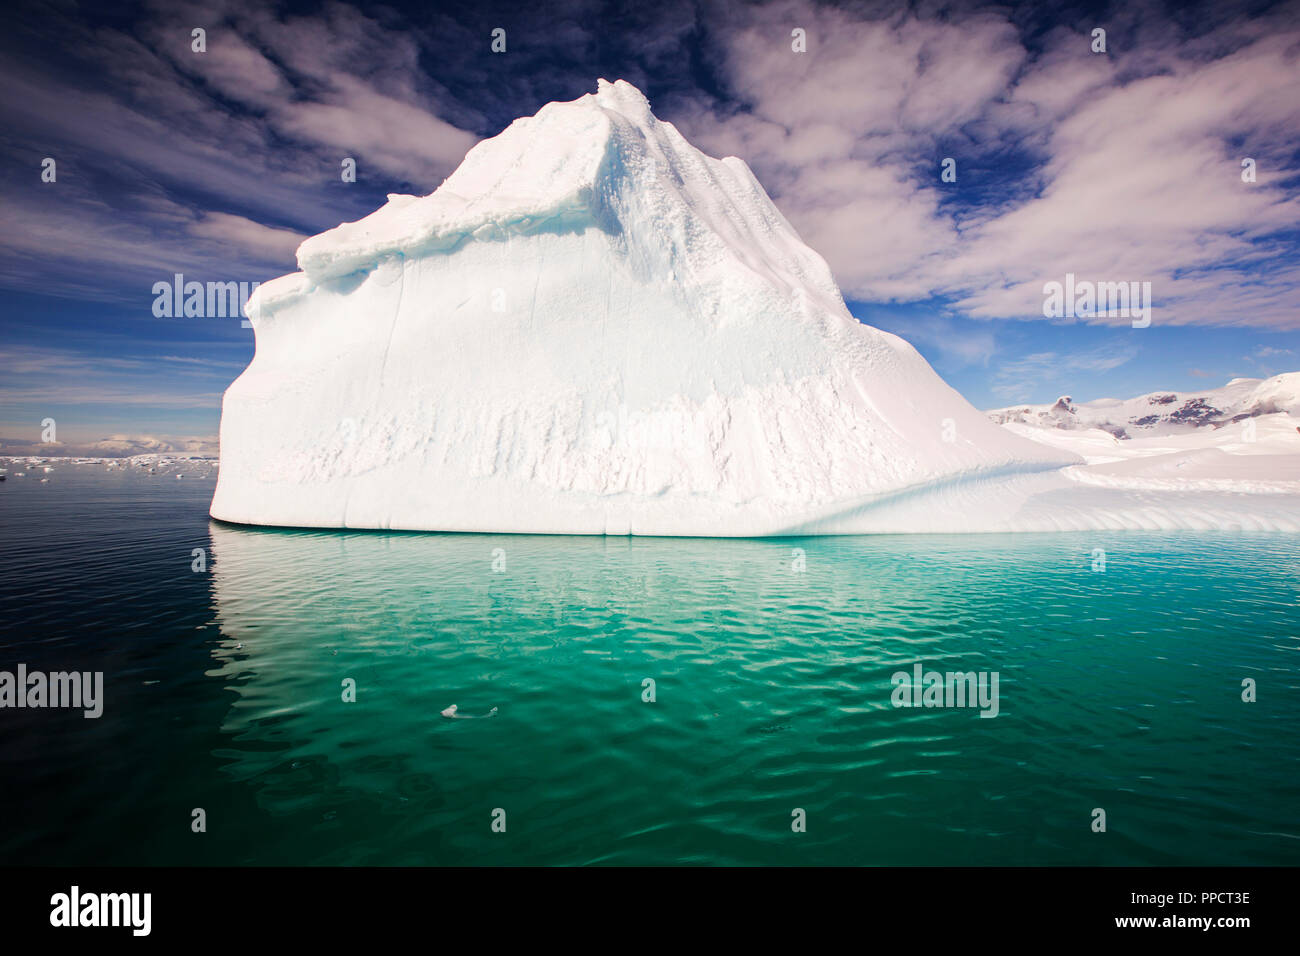 Ein Eisberg in der gerlache Strait trennt das Palmer Archipel von der Antarktischen Halbinsel aus Anvers Island. Die antartic Peninsula ist eine der schnellsten Erwärmung Gebiete des Planeten. Stockfoto